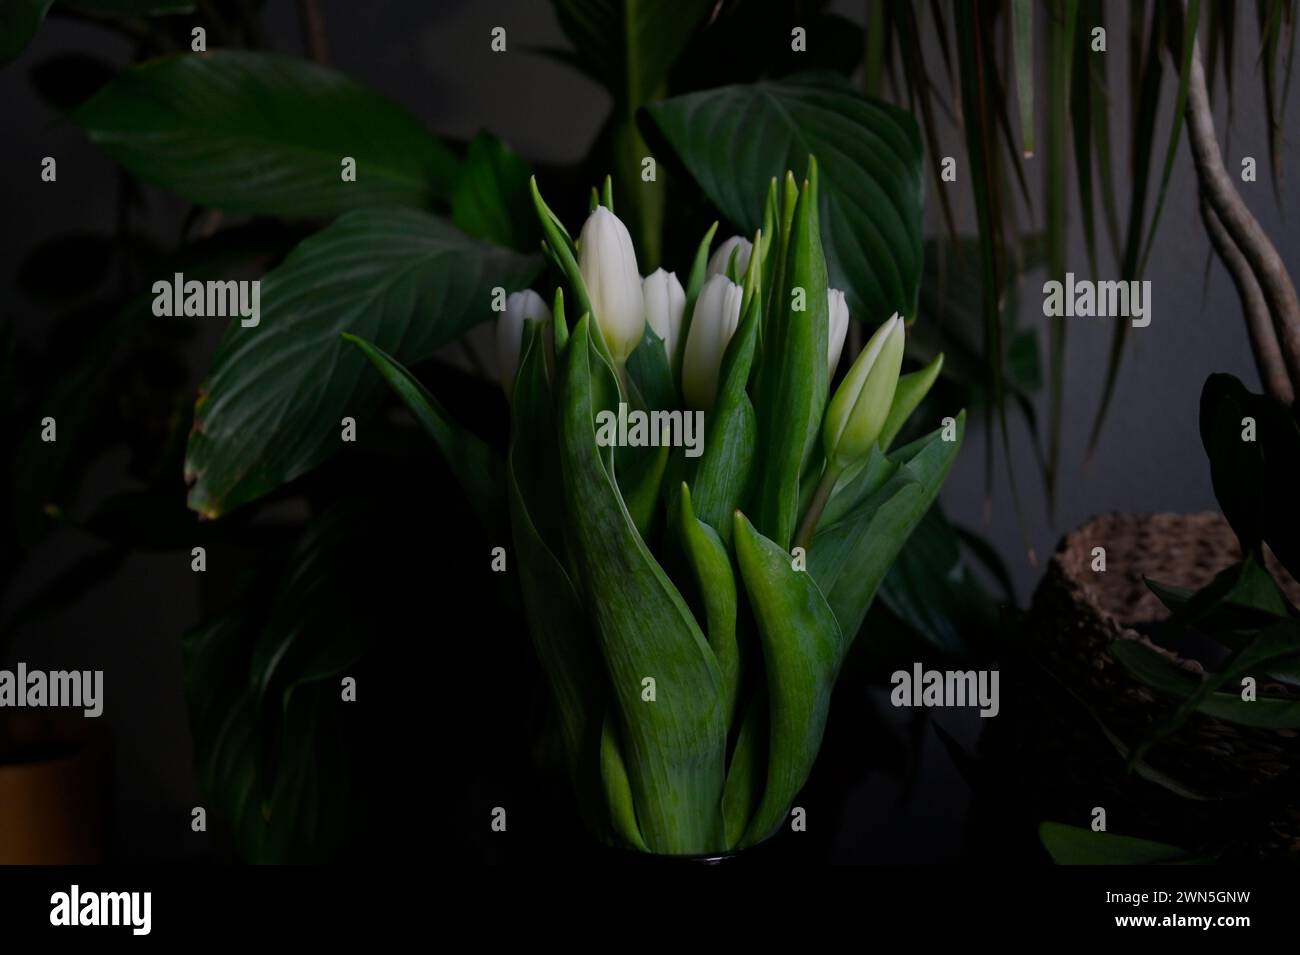 Eine ruhige Präsentation weißer Tulpen in einer Glasvase mit üppig grünen Blättern vor dunklem Hintergrund, die eine friedliche Atmosphäre hervorrufen Stockfoto